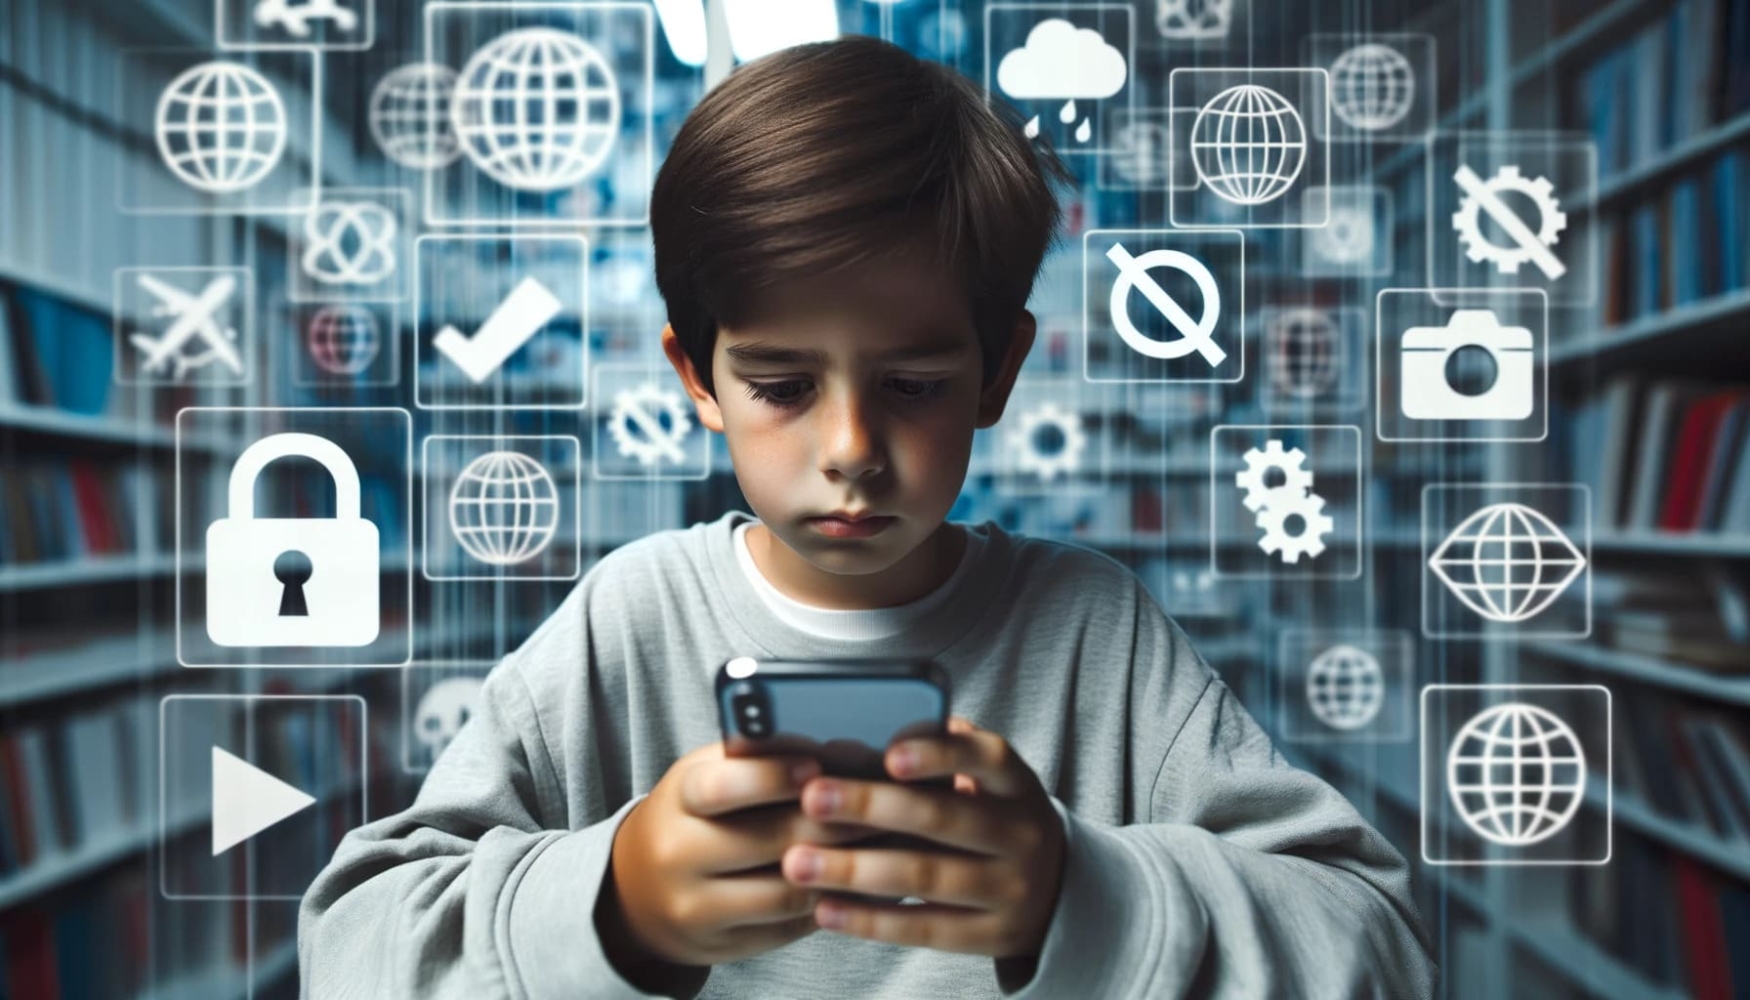 Fotografia de um jovem rapaz a olhar atentamente para um iPhone que tem nas mãos. Atrás dele, uma parede digital translúcida apresenta vários logótipos de sítios Web, alguns dos quais com um sinal de riscado, indicando que estão bloqueados.